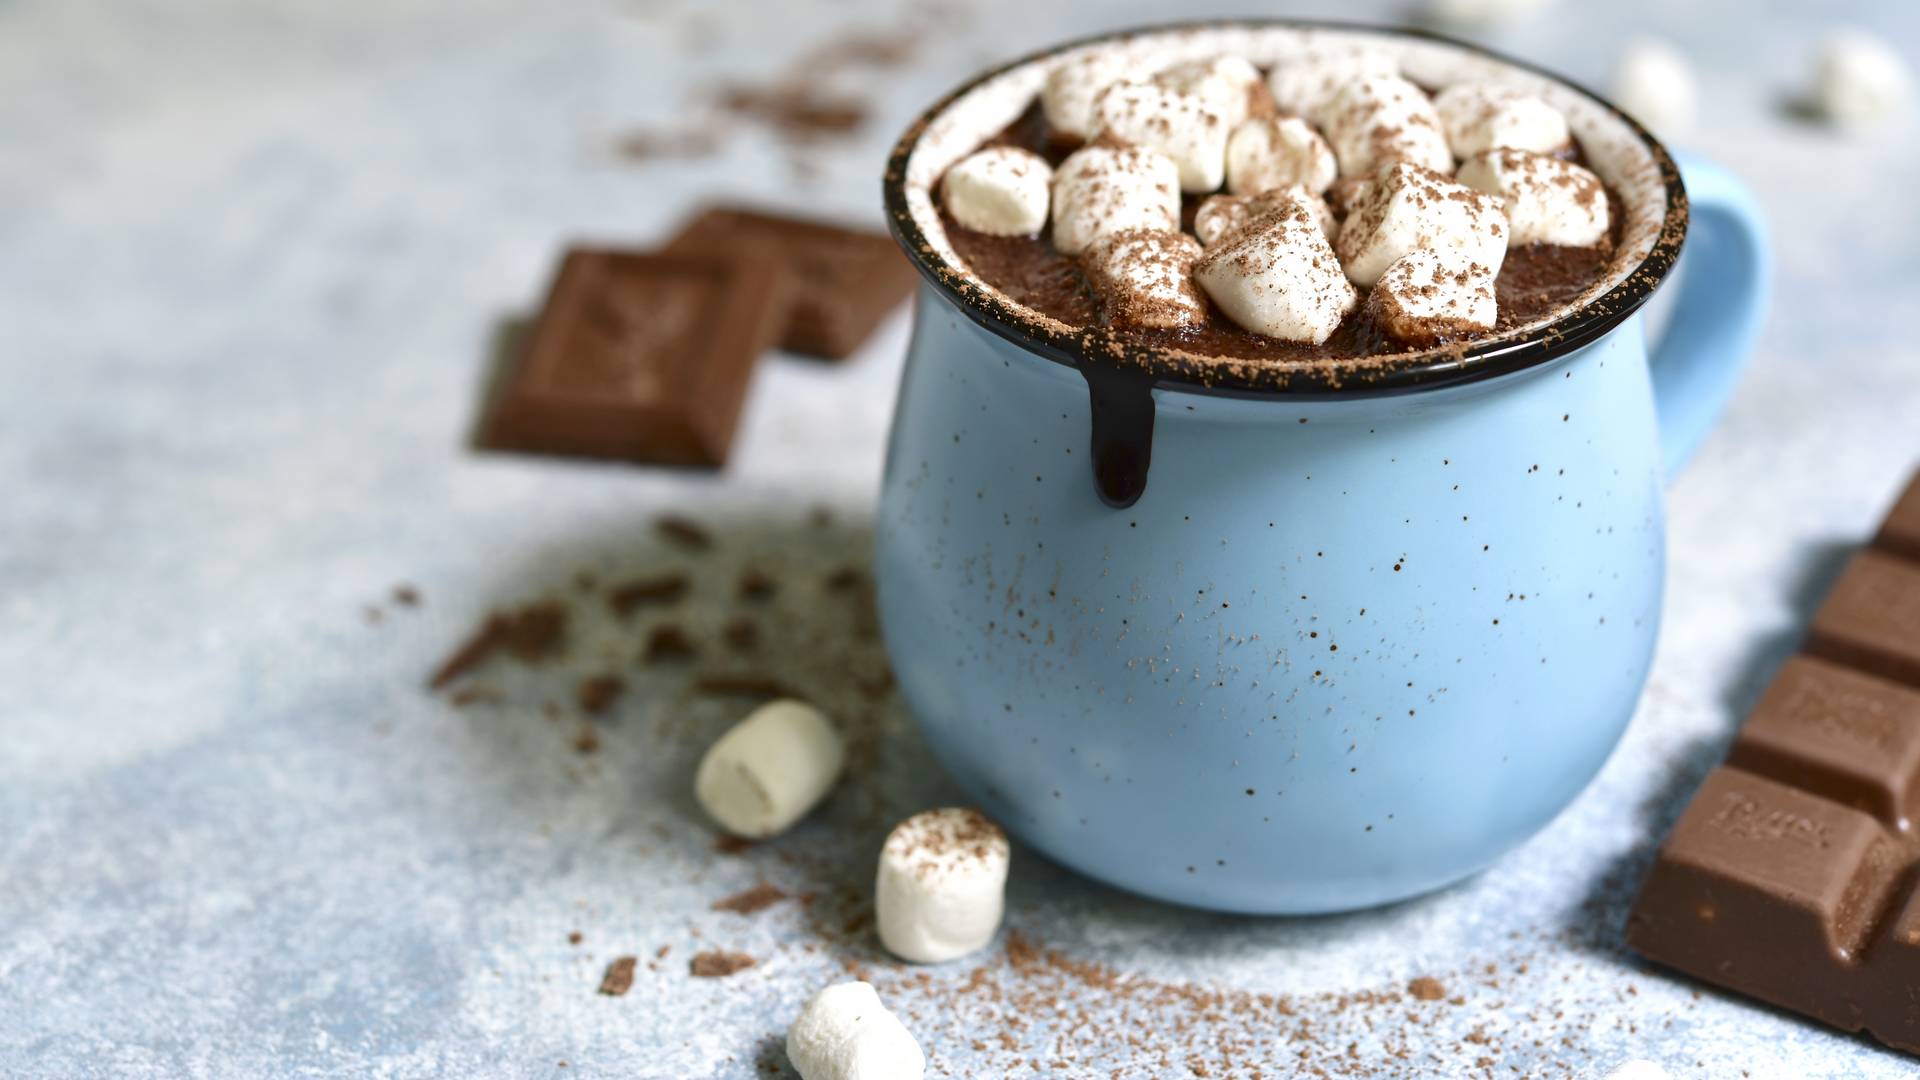 Kakao czy gorąca czekolada? Przepisy na rozgrzewające napoje idealne na jesień